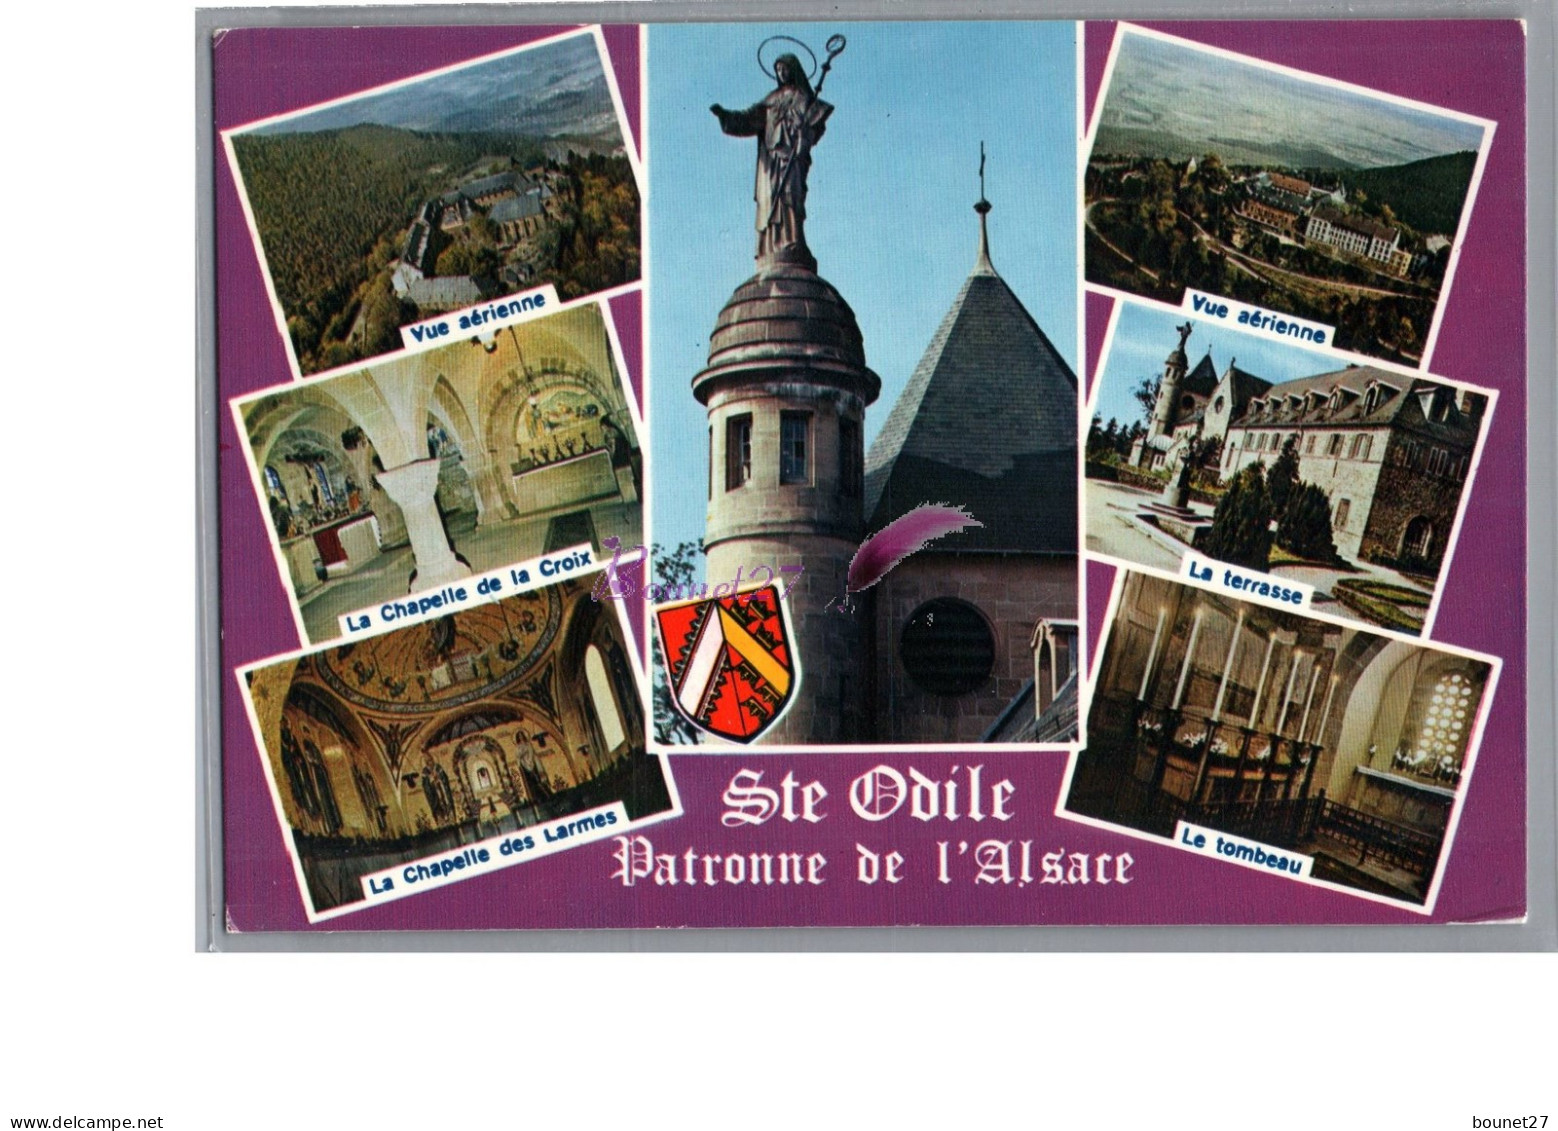 SAINT ODILE 67 - La Patrone De L'Alsace Vue Aerienne Chapelle De La Croix Des Larmes Terrasse Tombeau - Sainte Odile